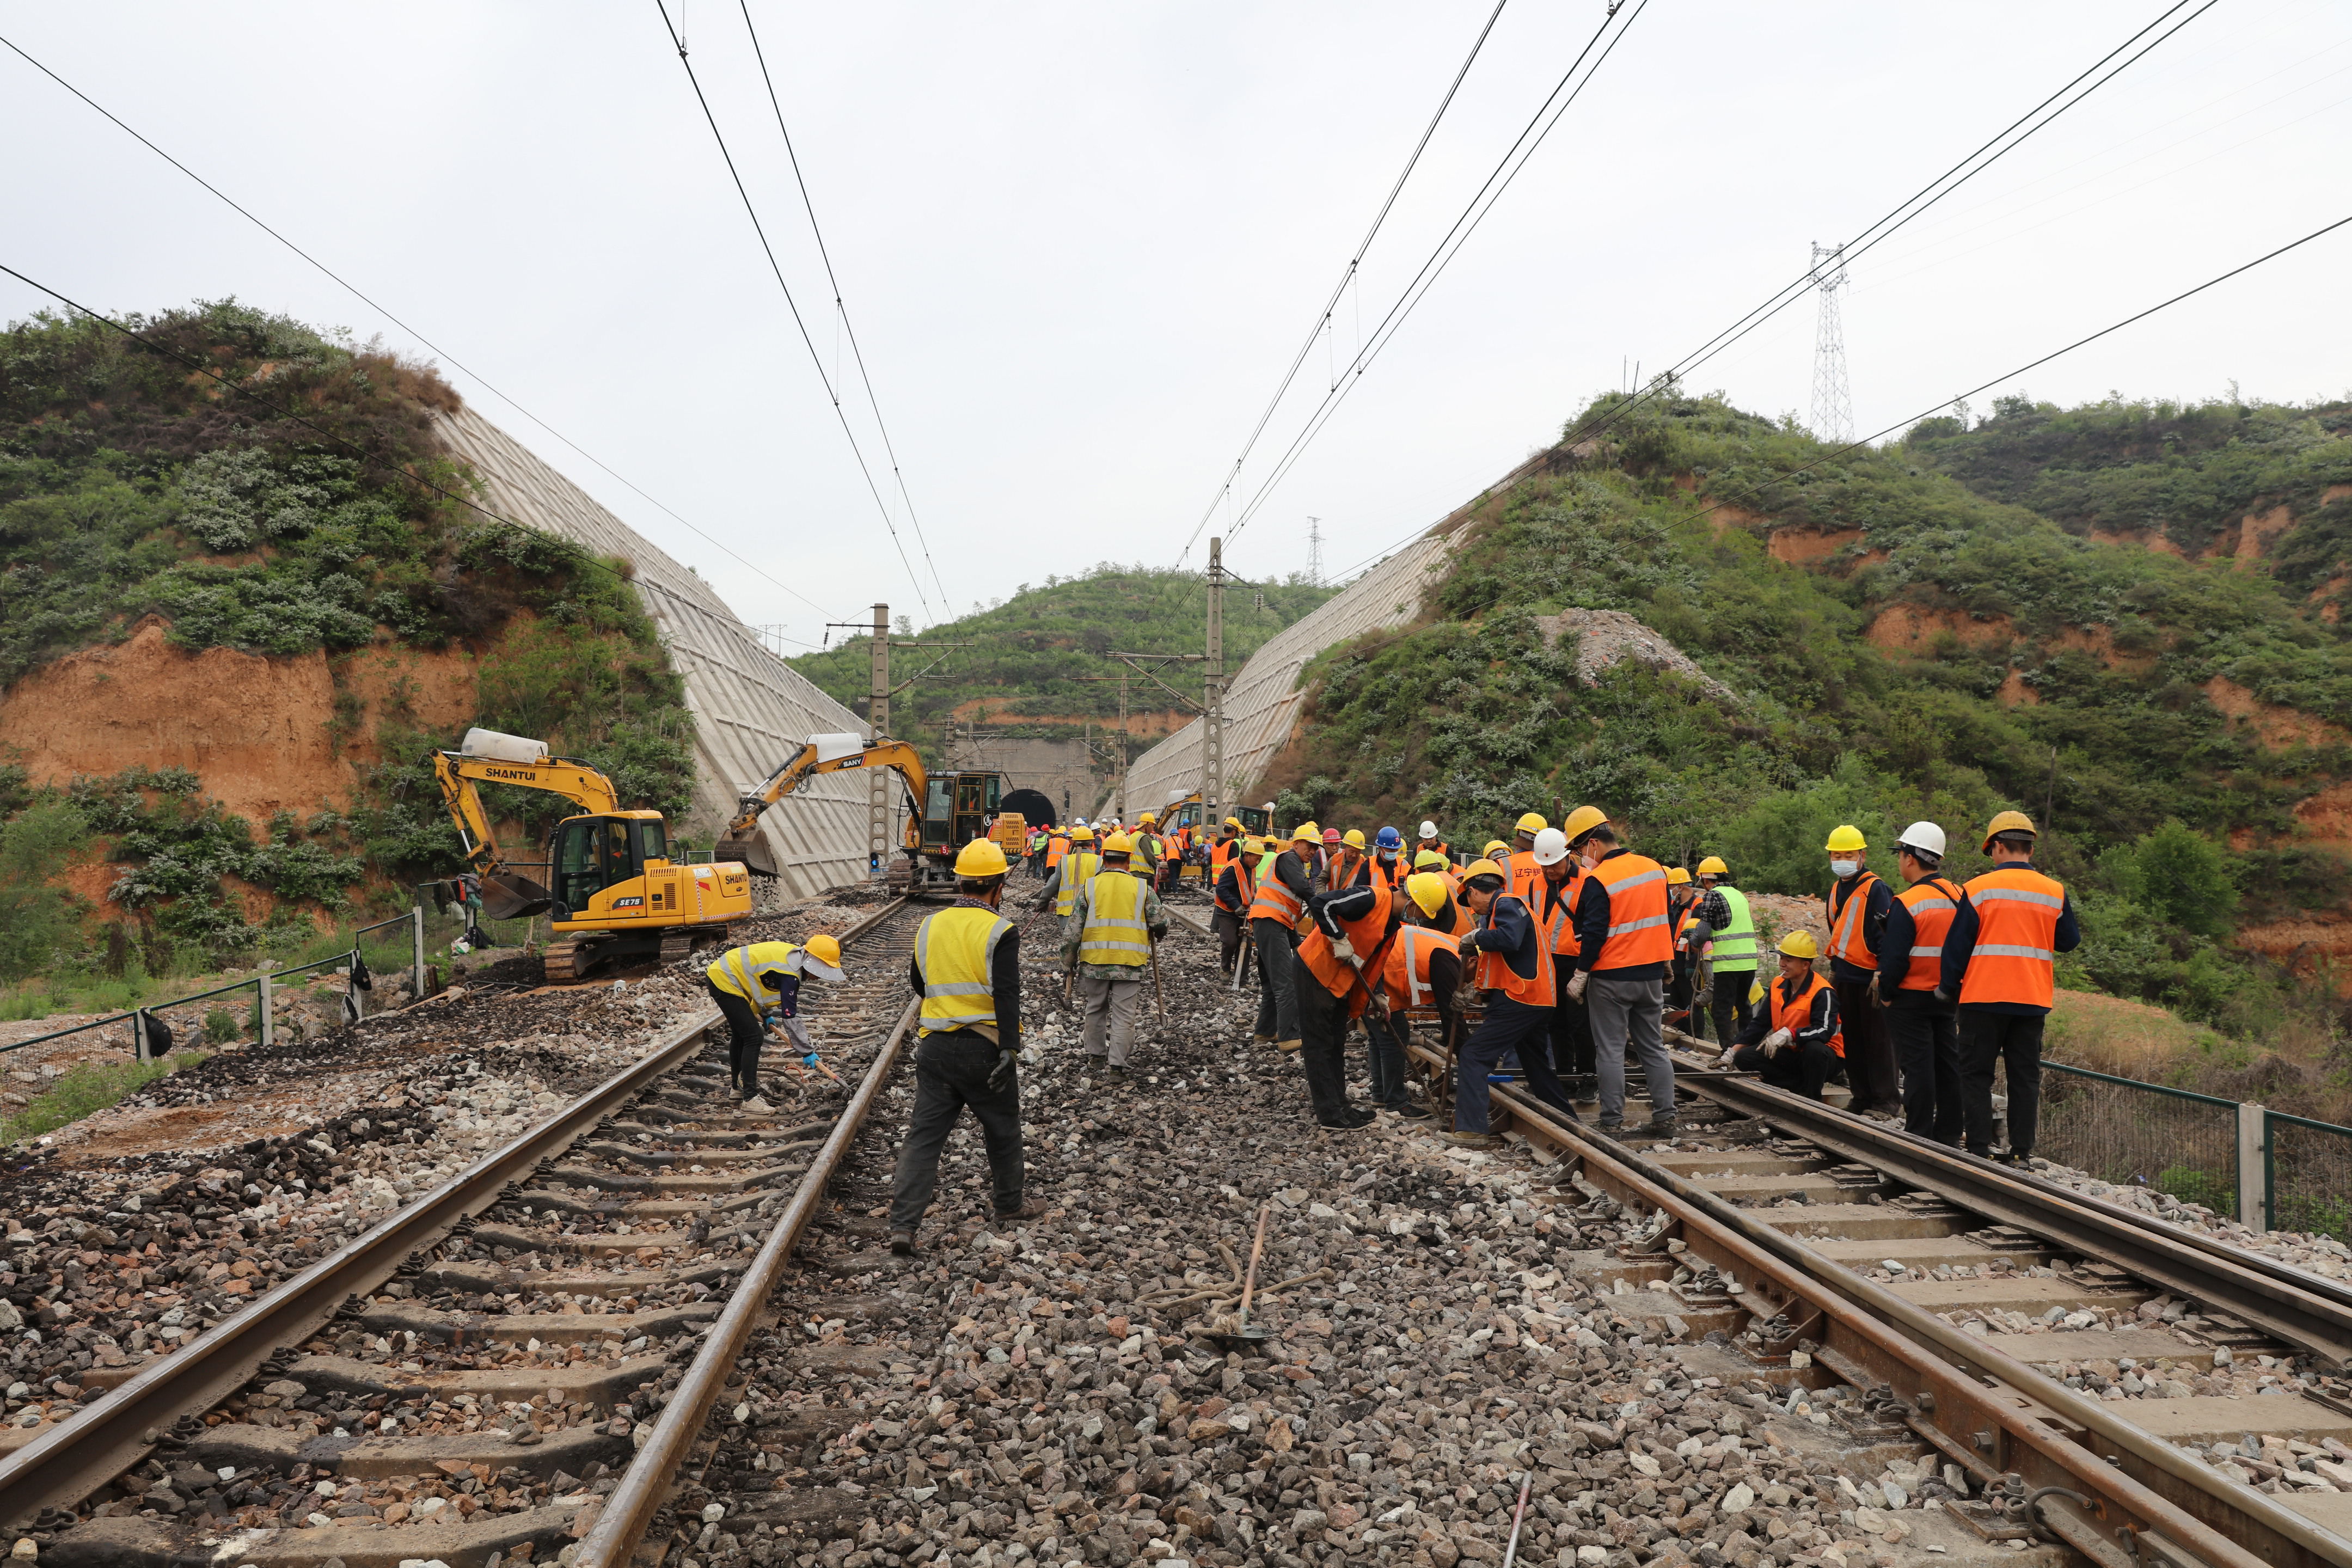 晋煤外运重要通道侯月铁路开启集中修施工